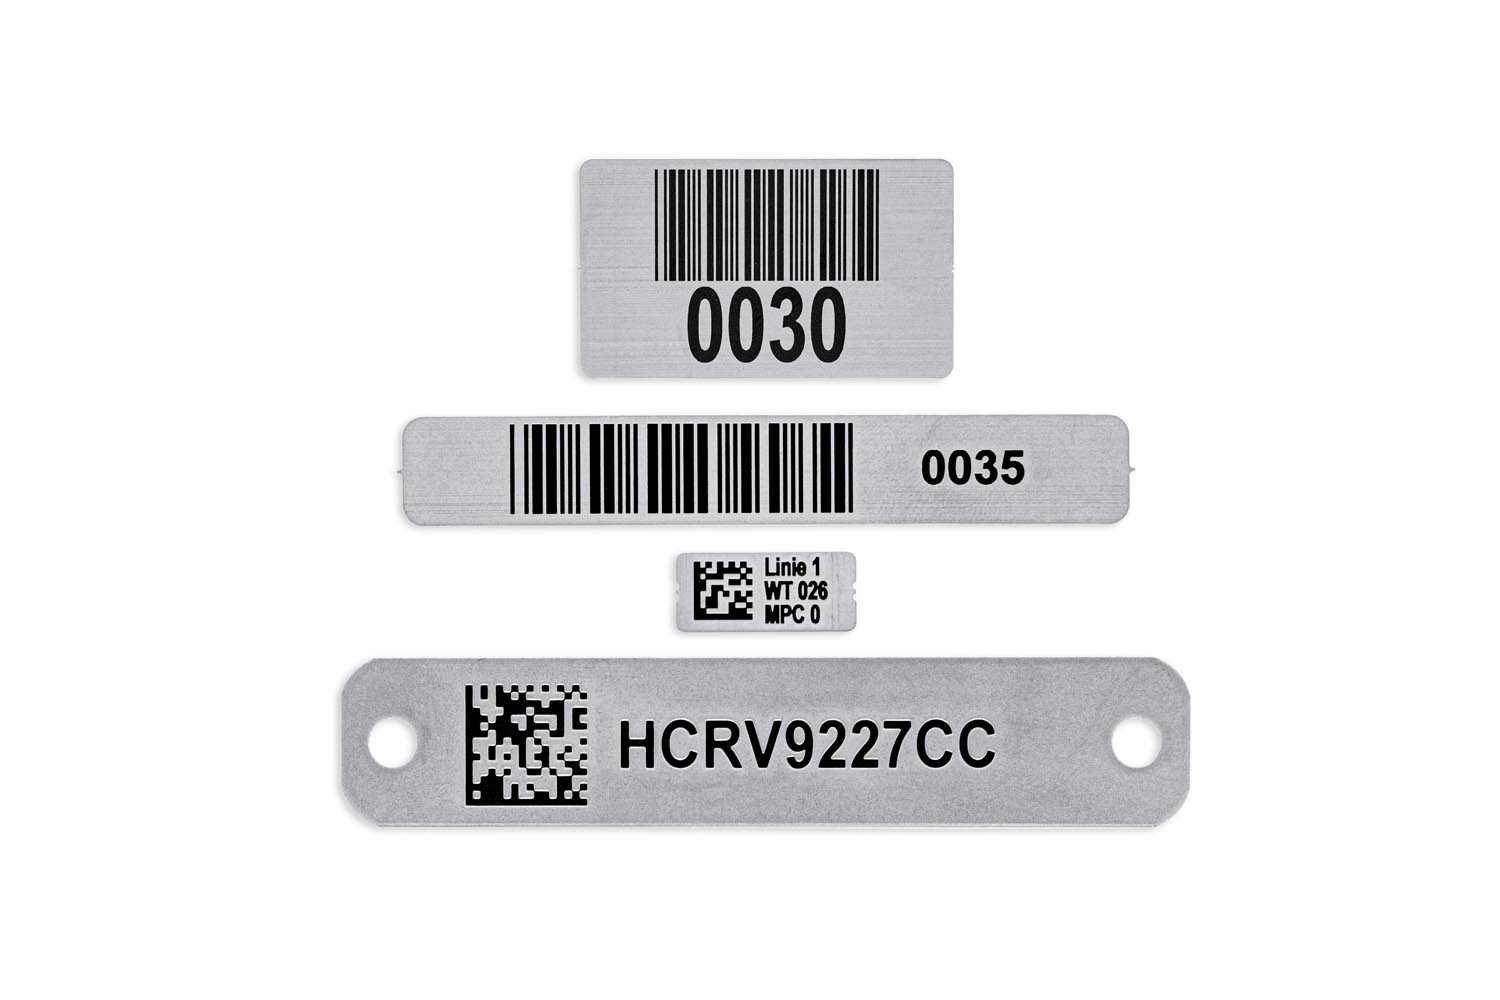 Bild von inotec etched label Etiketten aus Stahl